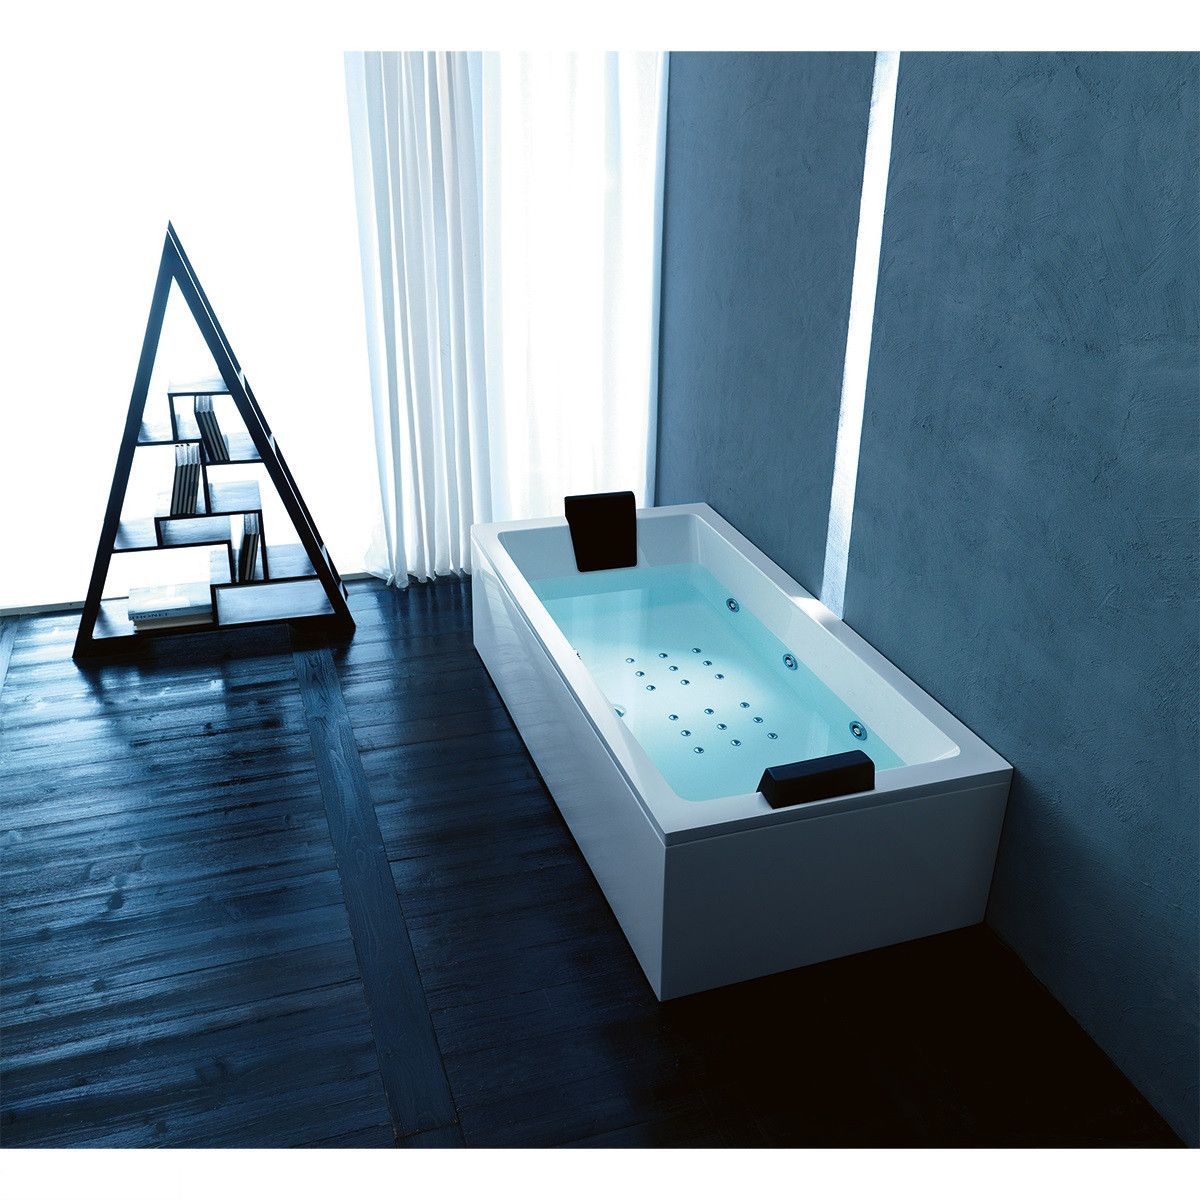 Гідромасажна ванна Treesse QUADRA STD Ванна г/м, 180x80 см + рама + 2 панелі + слив колона, ліва Treesse